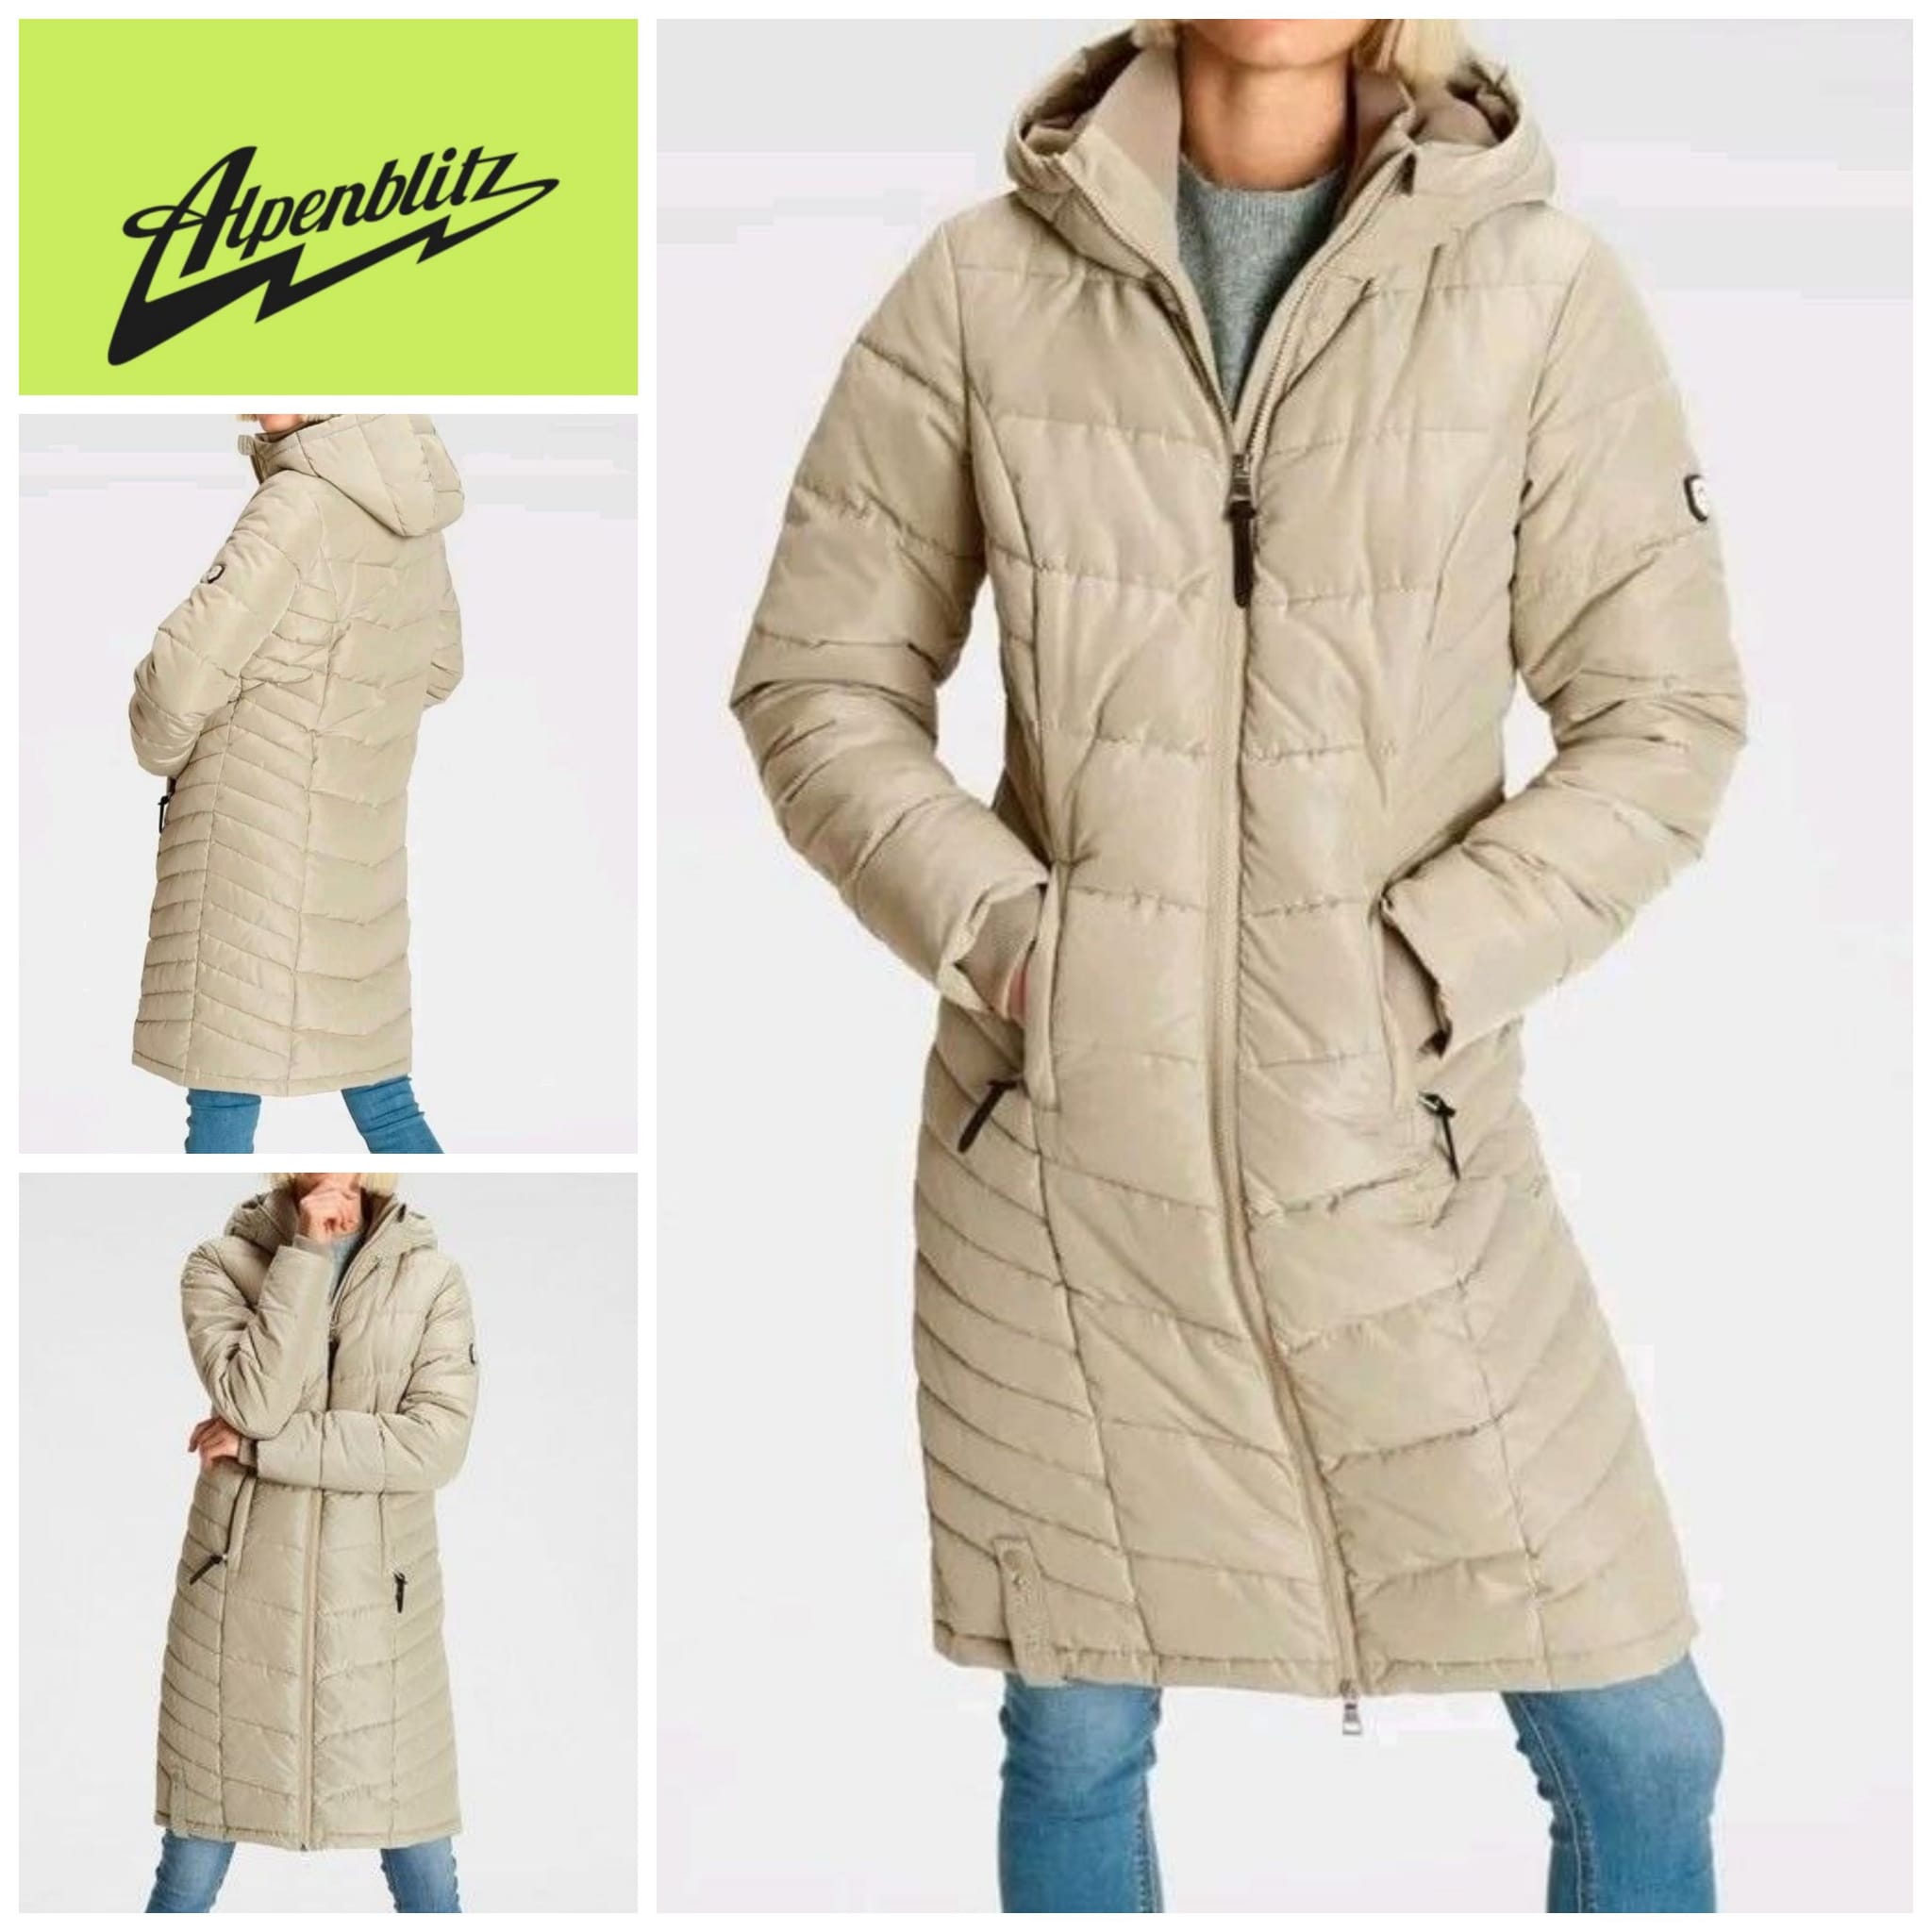 Women's winter coat Alpenblitz